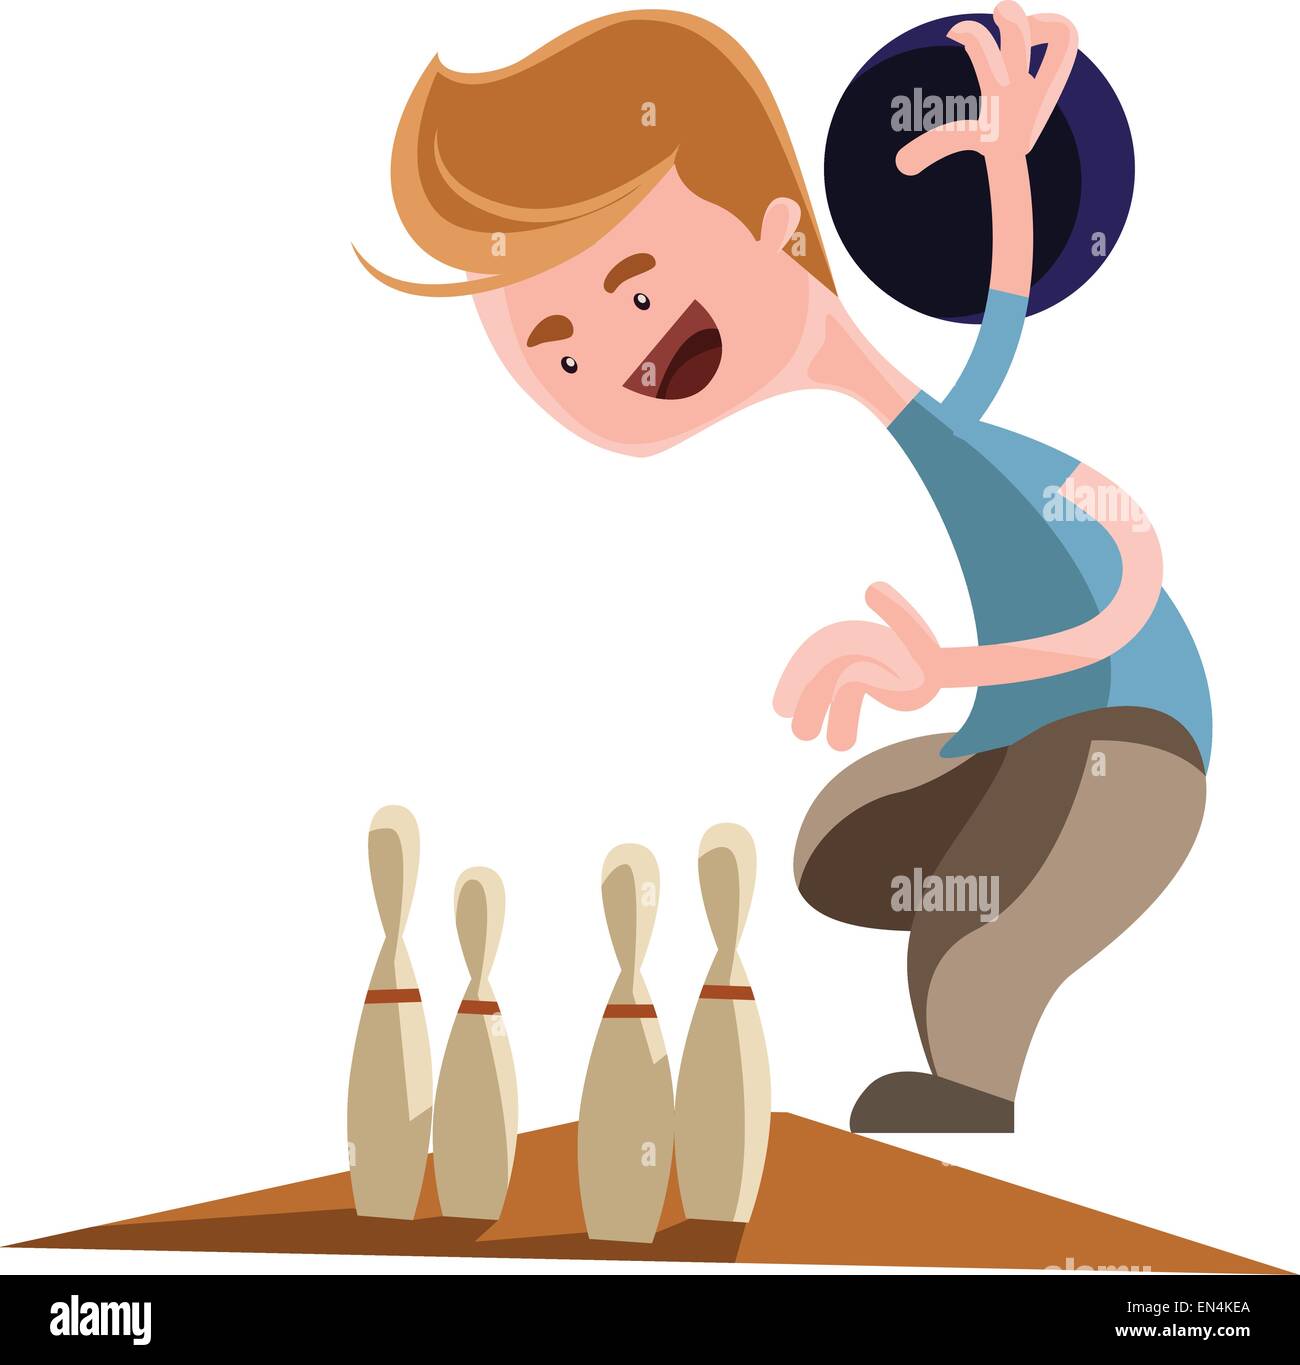 Man playing bowling vector illustration cartoon character Stock Vector